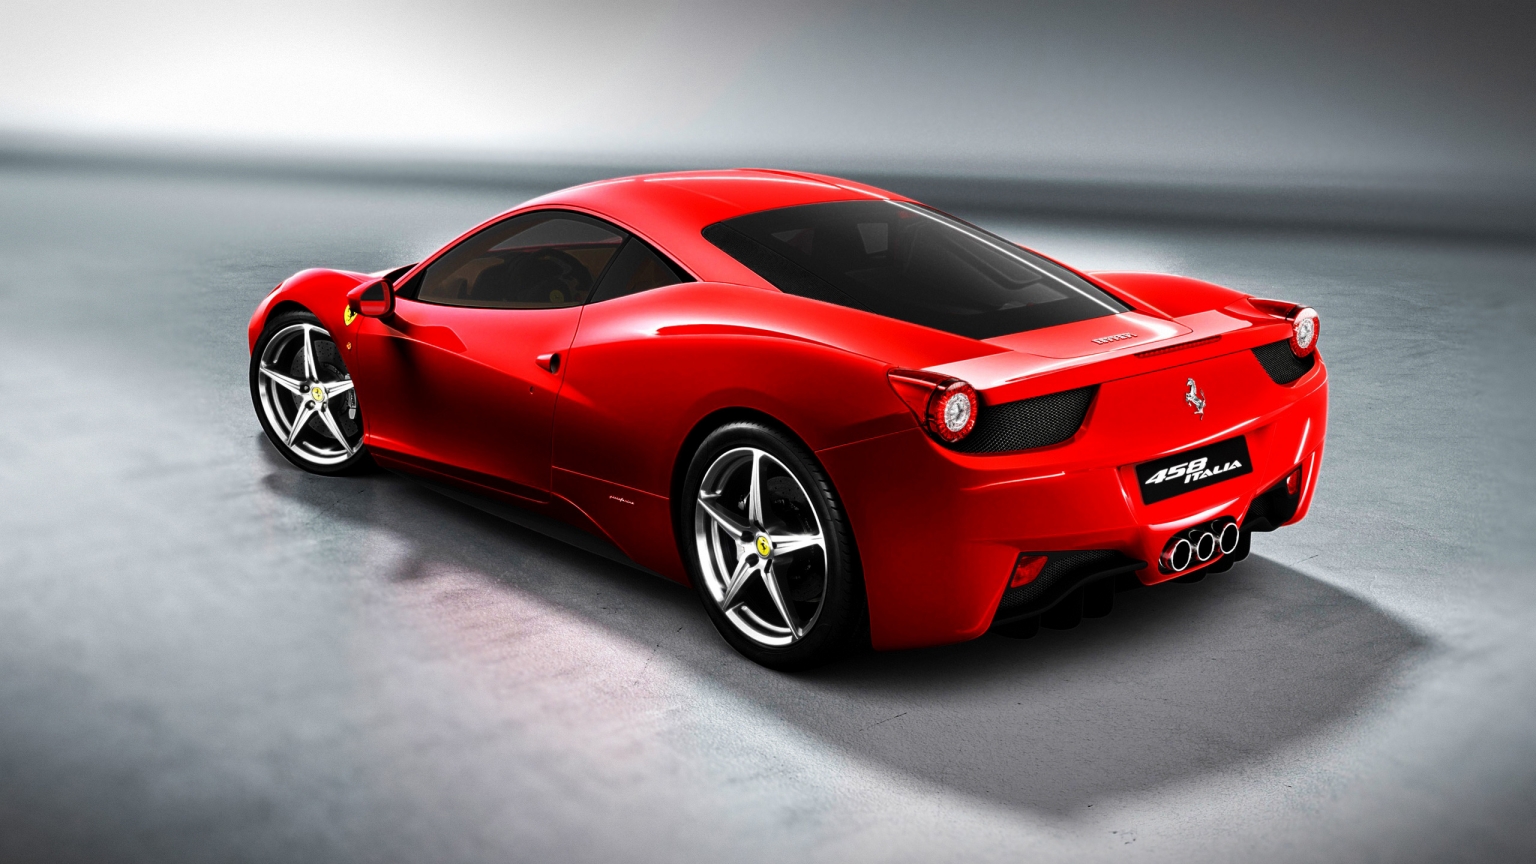 Ferrari 458 for 1536 x 864 HDTV resolution